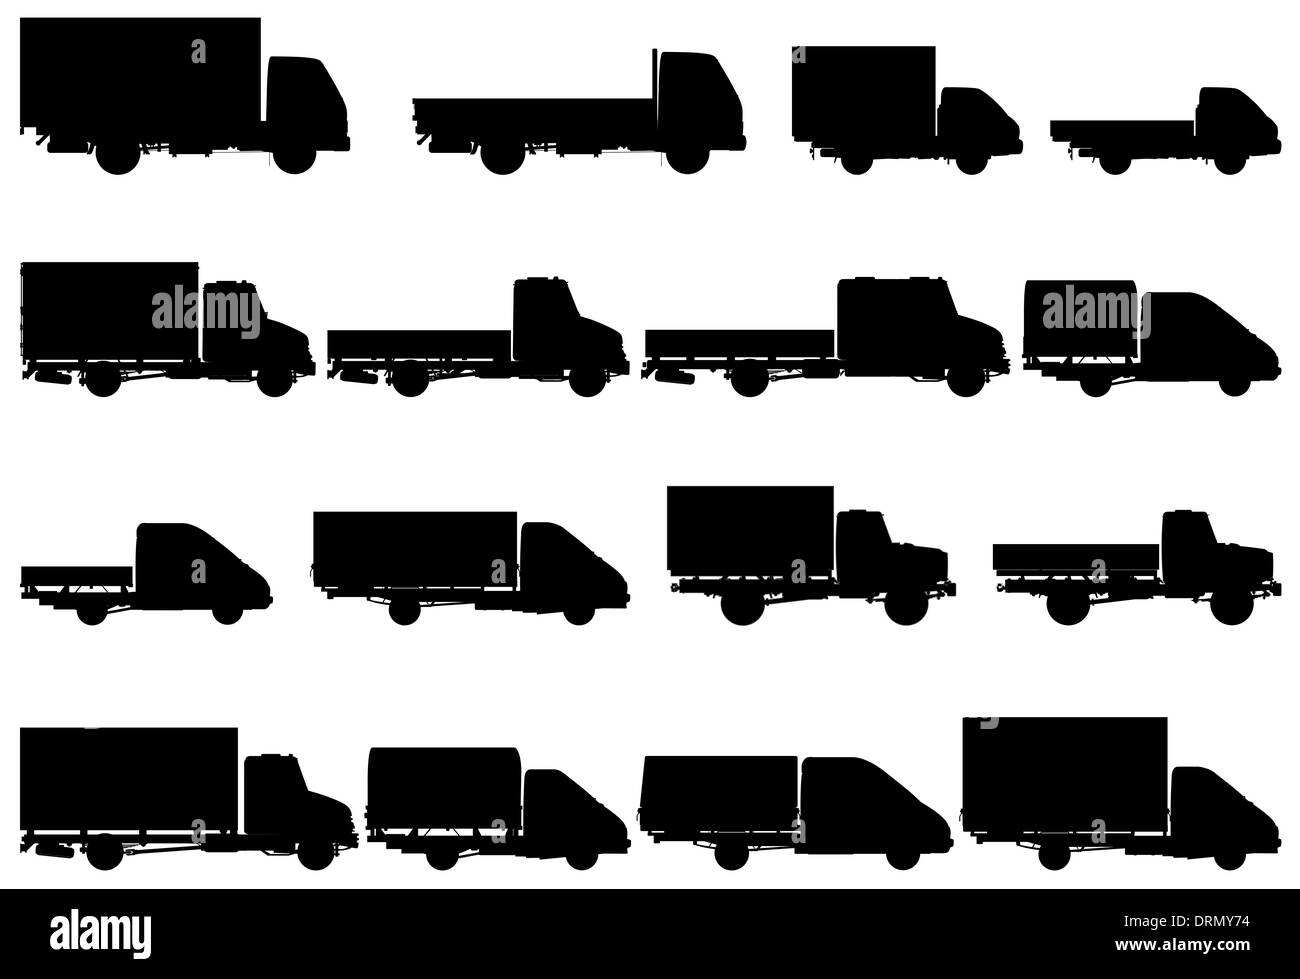 Jeu de camion de livraison / Banque D'Images